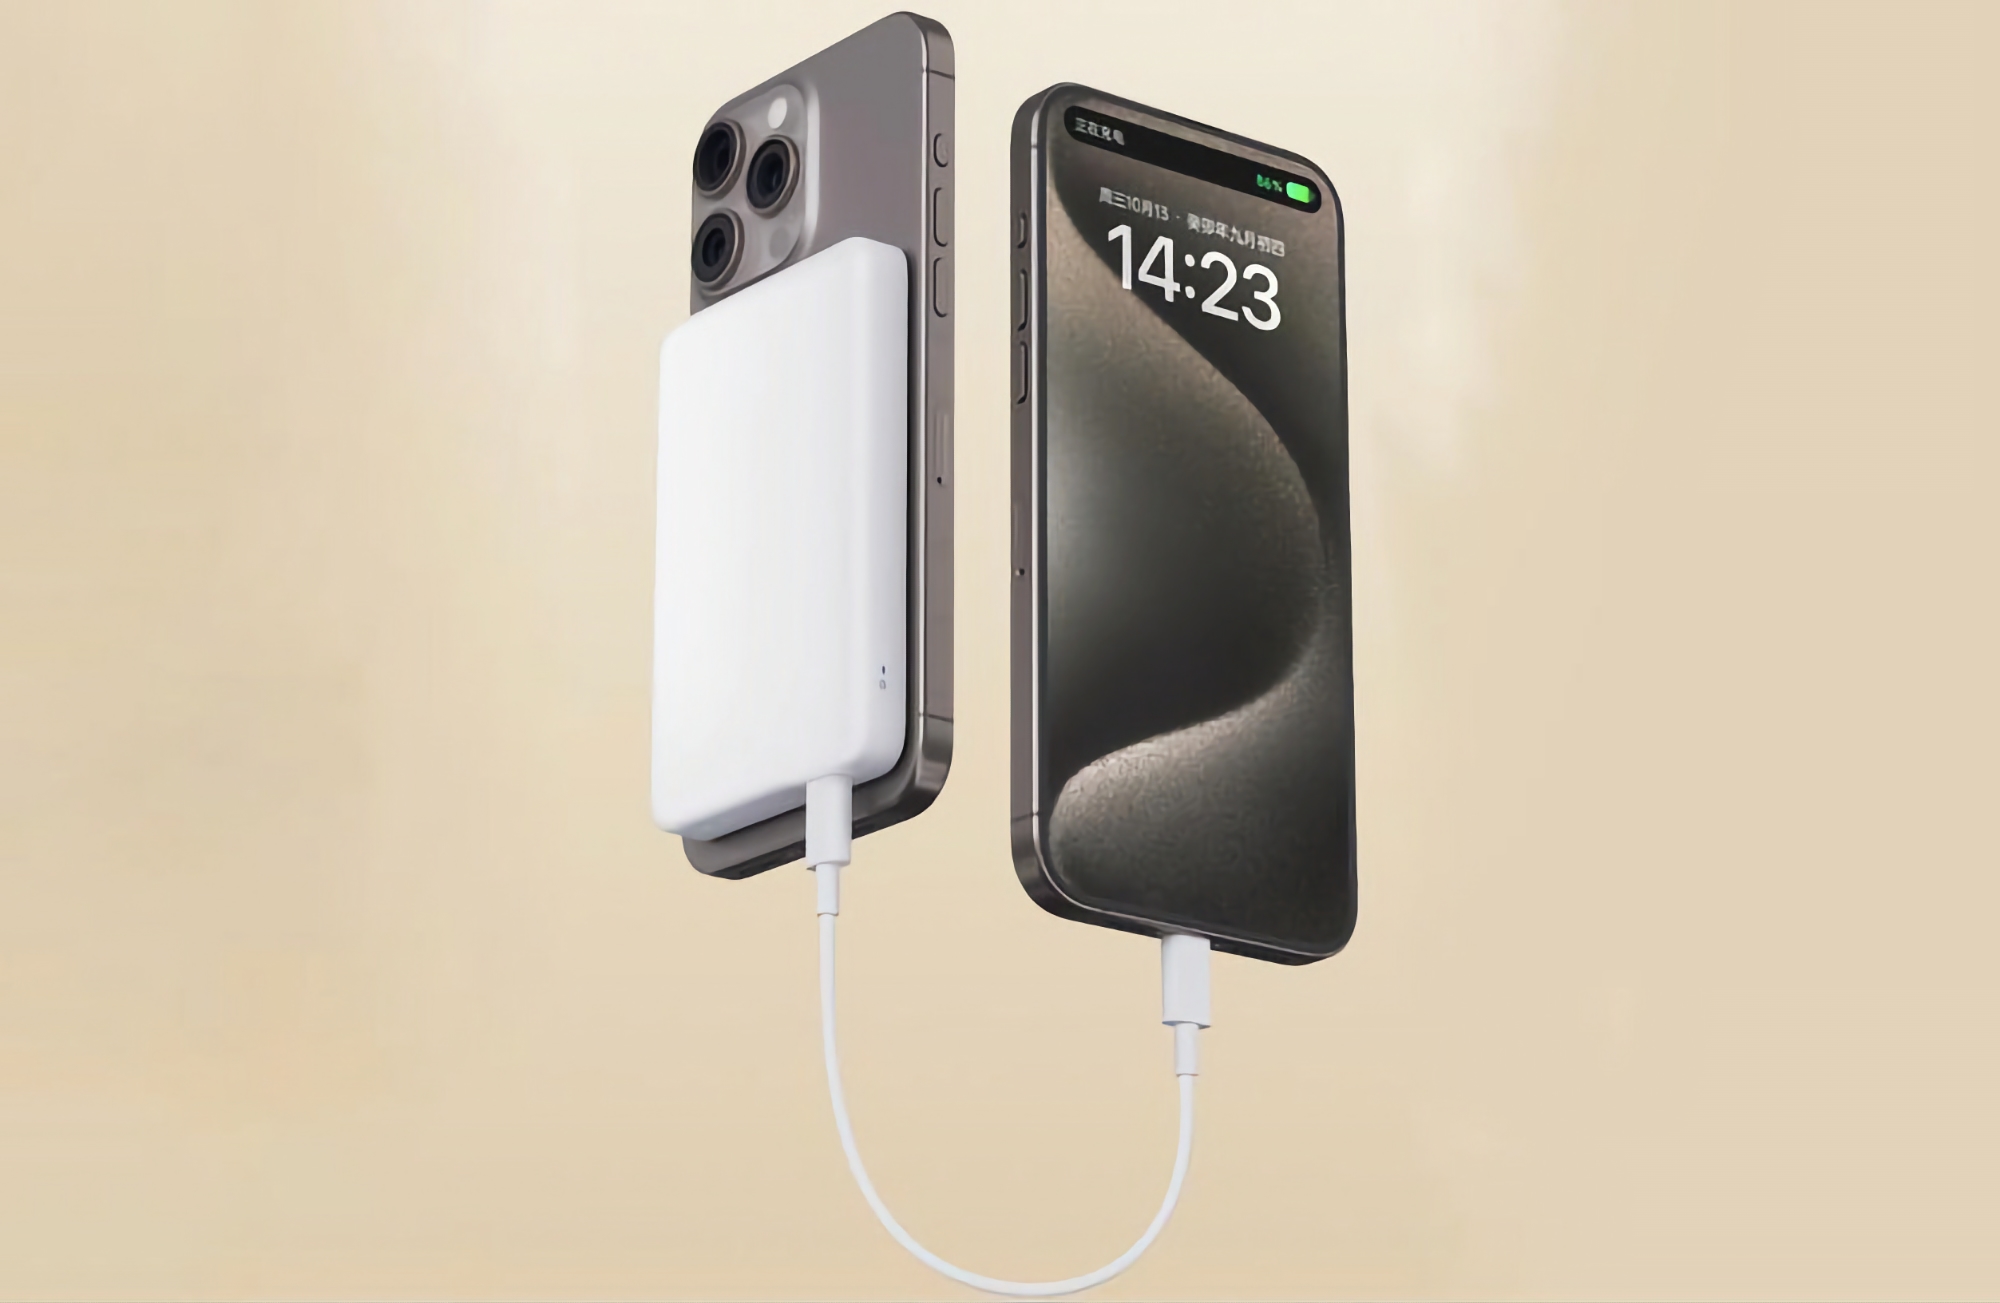 Xiaomi hat mit dem Verkauf von Magnetic Power Bank für iPhone mit MagSafe Unterstützung, 5000 mAh Kapazität und $18 Preisschild begonnen